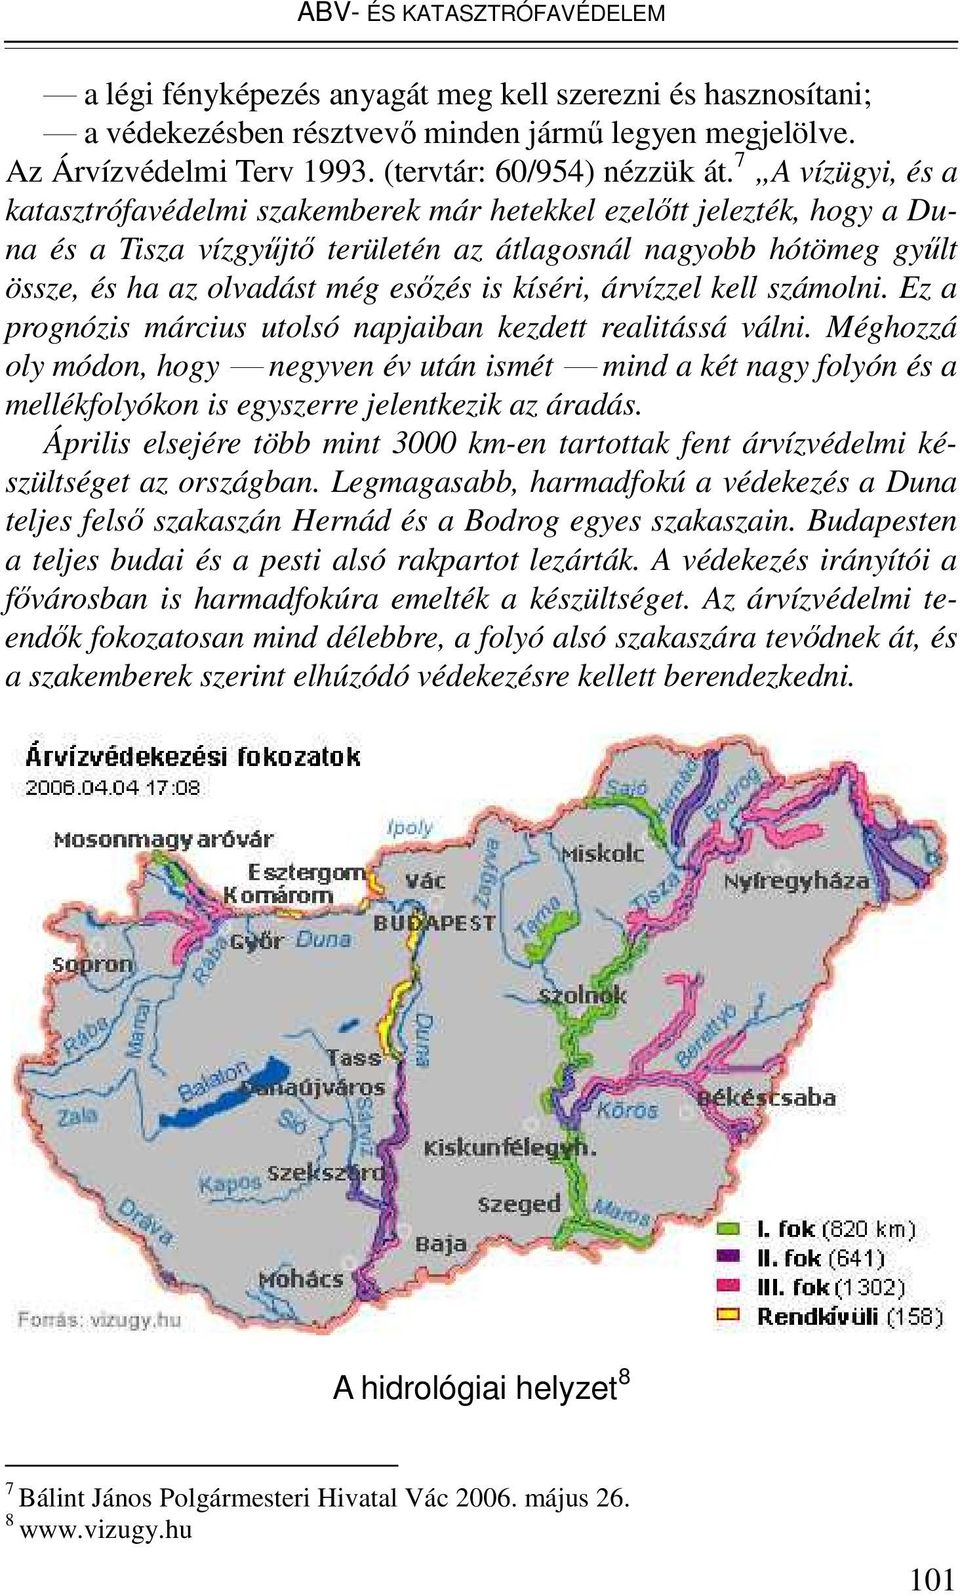 7 A vízügyi, és a katasztrófavédelmi szakemberek már hetekkel ezelıtt jelezték, hogy a Duna és a Tisza vízgyőjtı területén az átlagosnál nagyobb hótömeg győlt össze, és ha az olvadást még esızés is